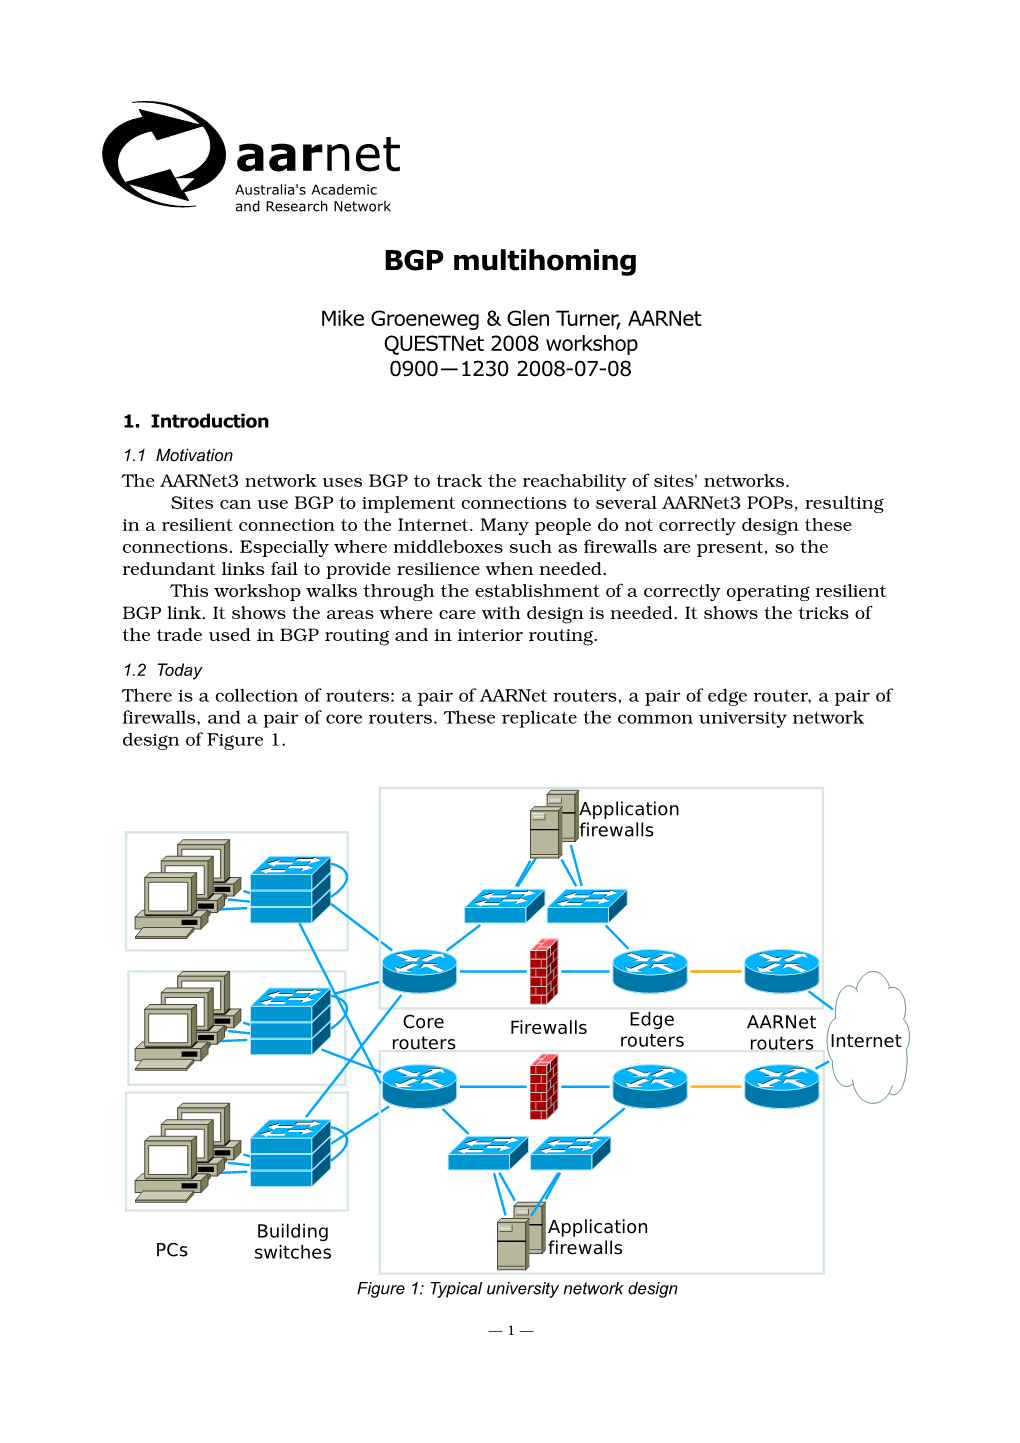 Aarnet BGP Multihoming